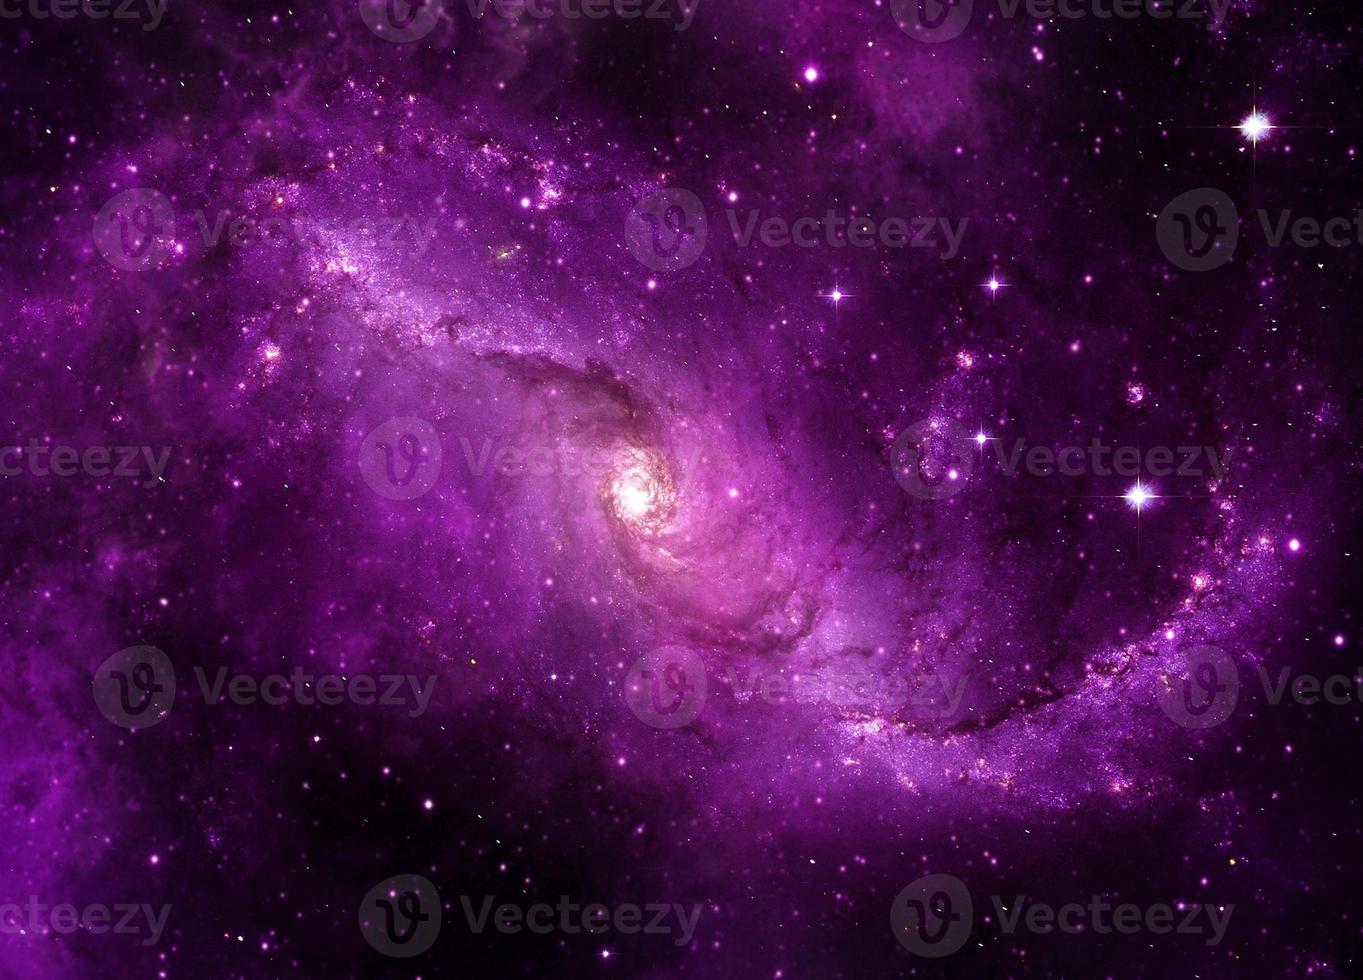 viola drammatico panorama notturno della galassia dallo spazio dell'universo lunare sul cielo notturno foto